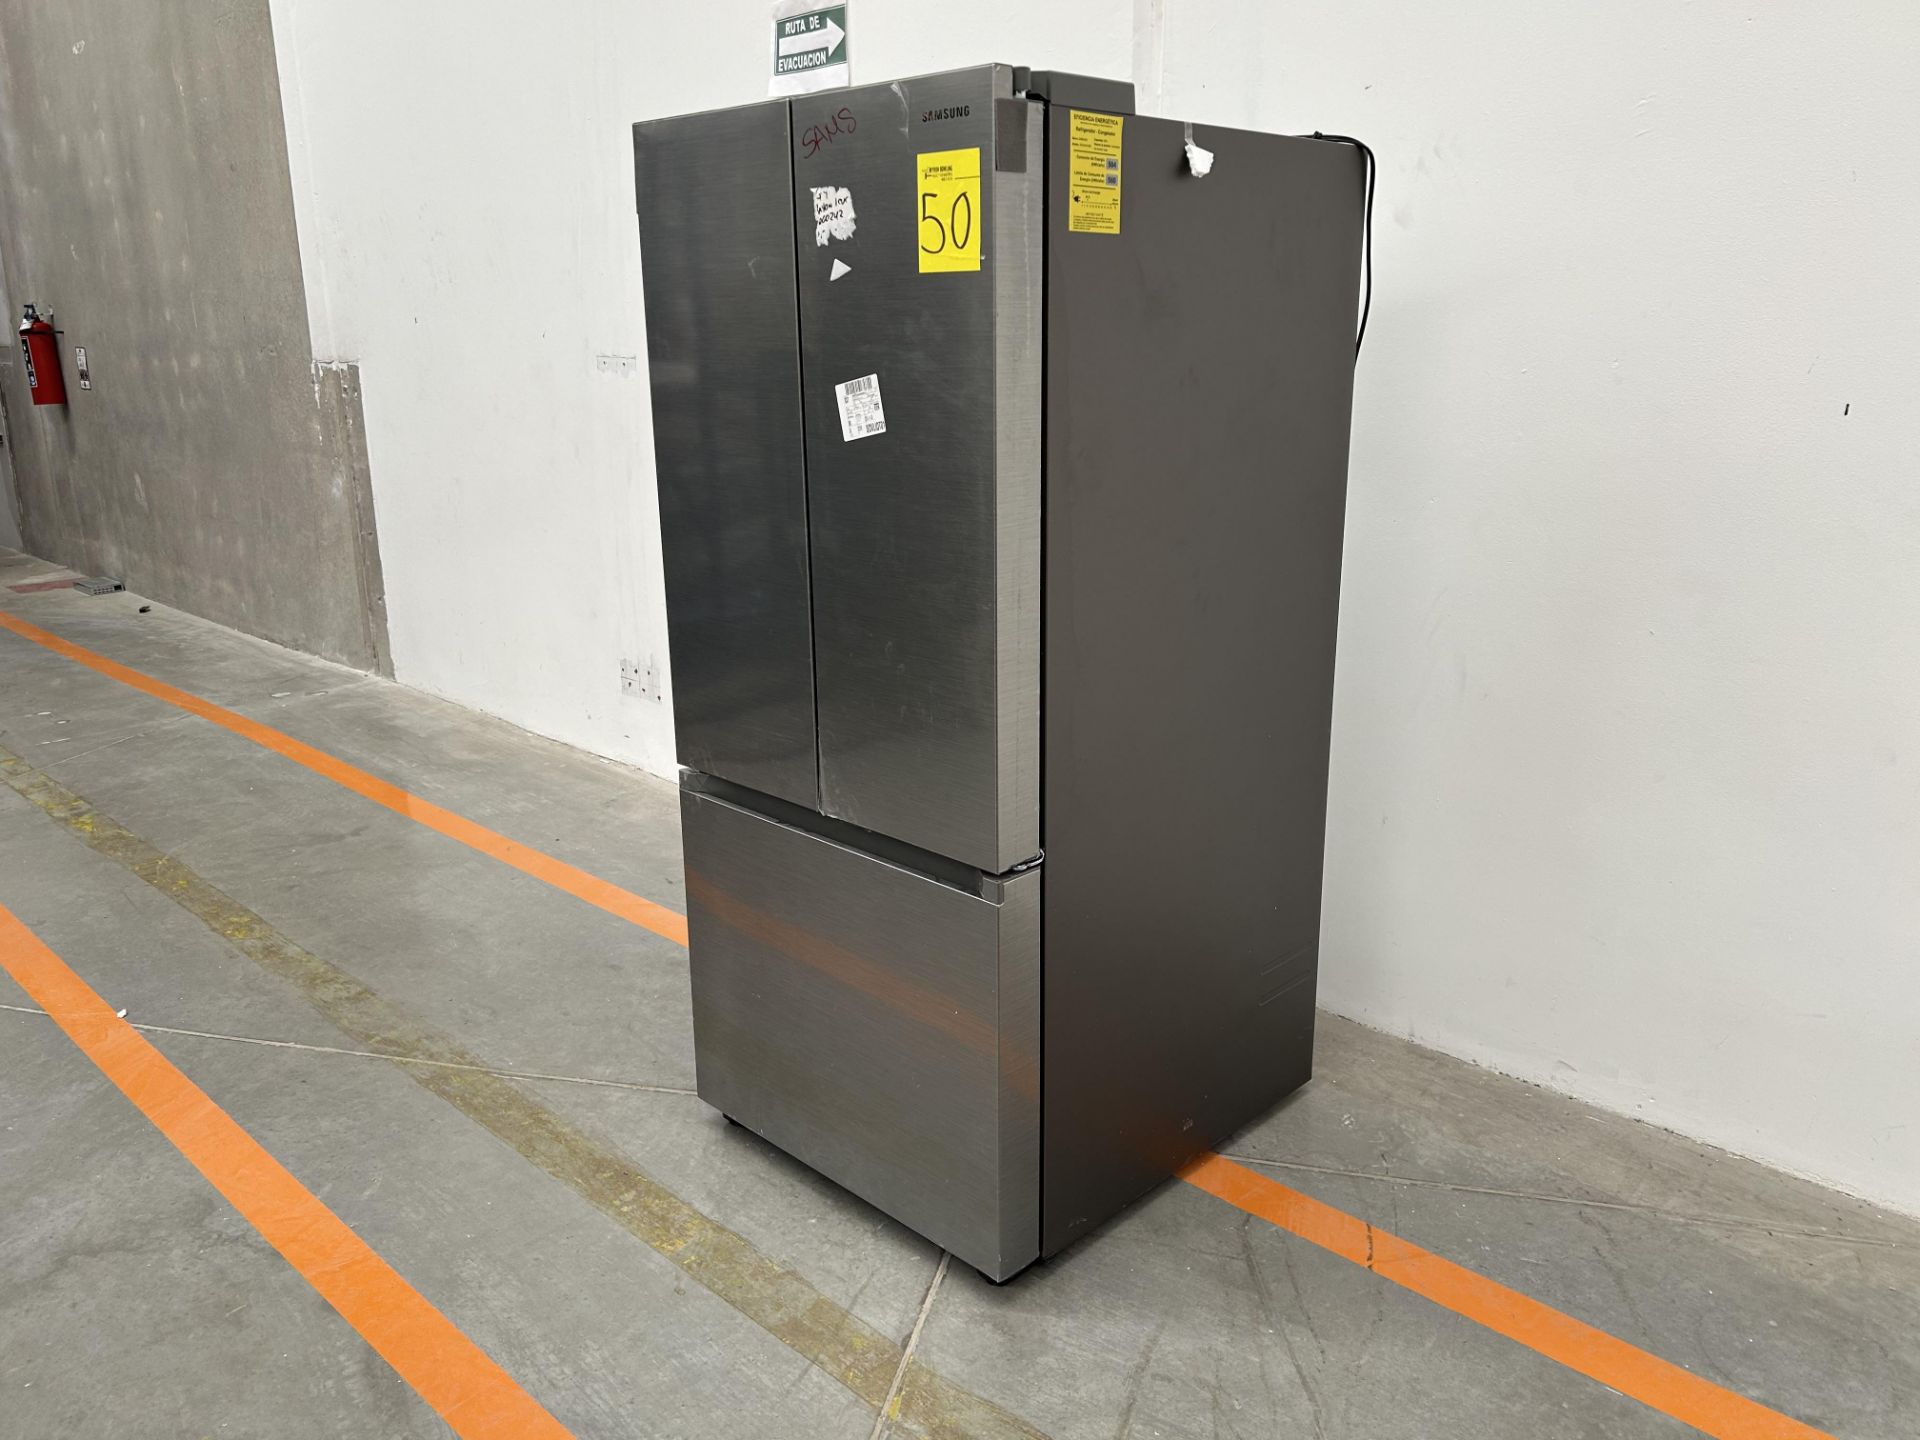 (NUEVO) Refrigerador Marca SAMSUNG, Modelo RF22A410S9, Serie 01875P, Color GRIS - Bild 2 aus 4